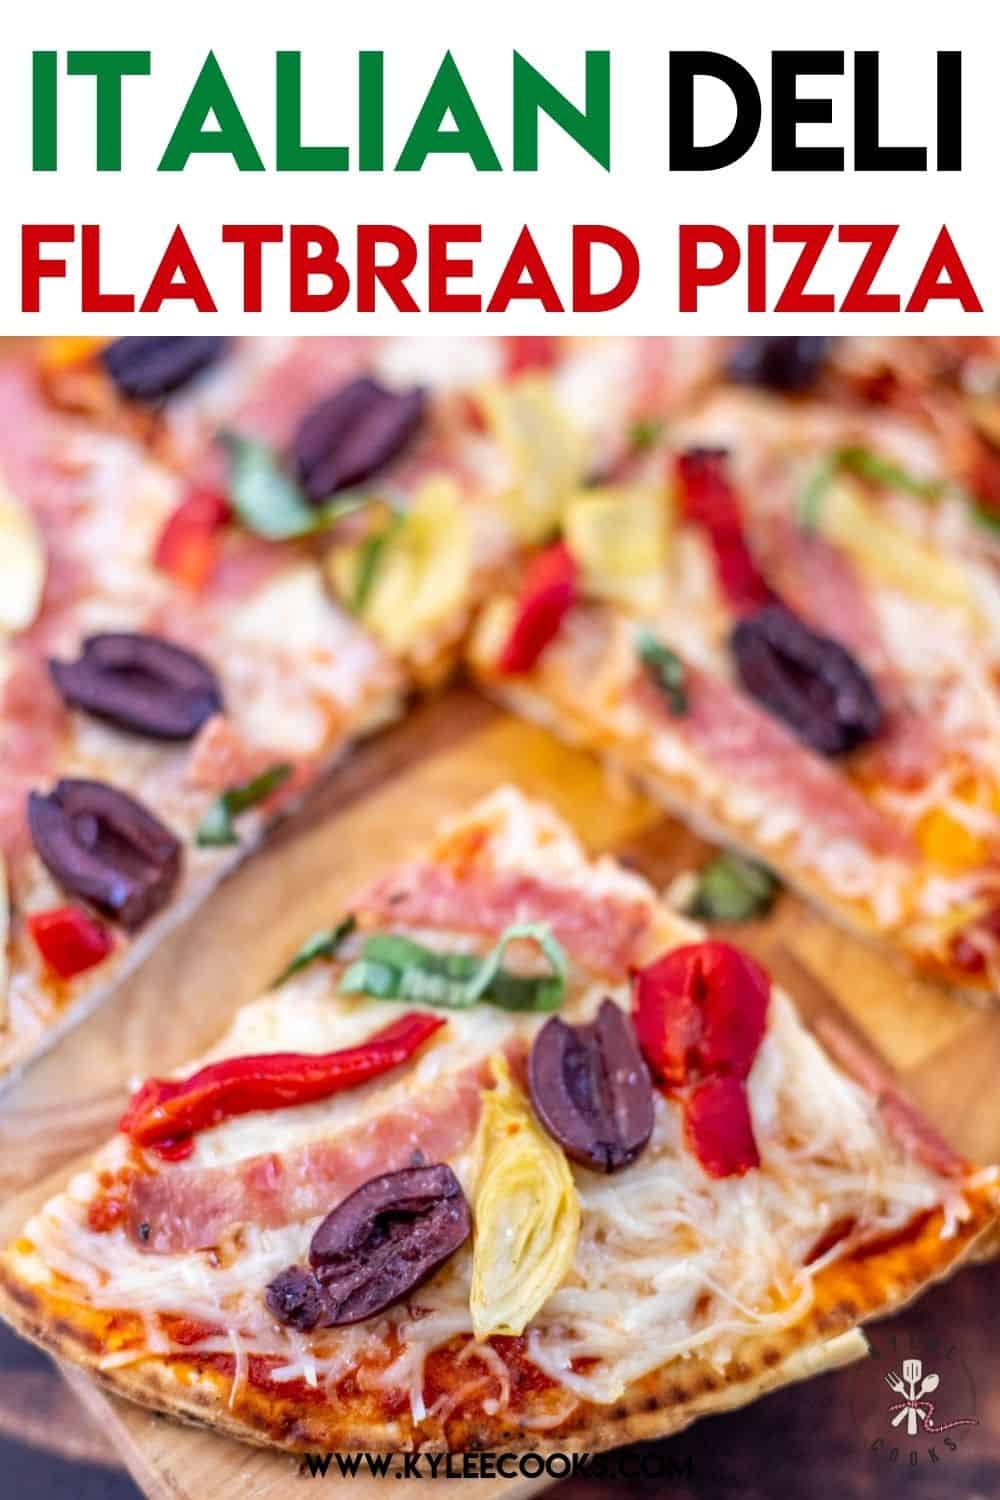 italian deli flatbread pizza with recipe name overlaid in text